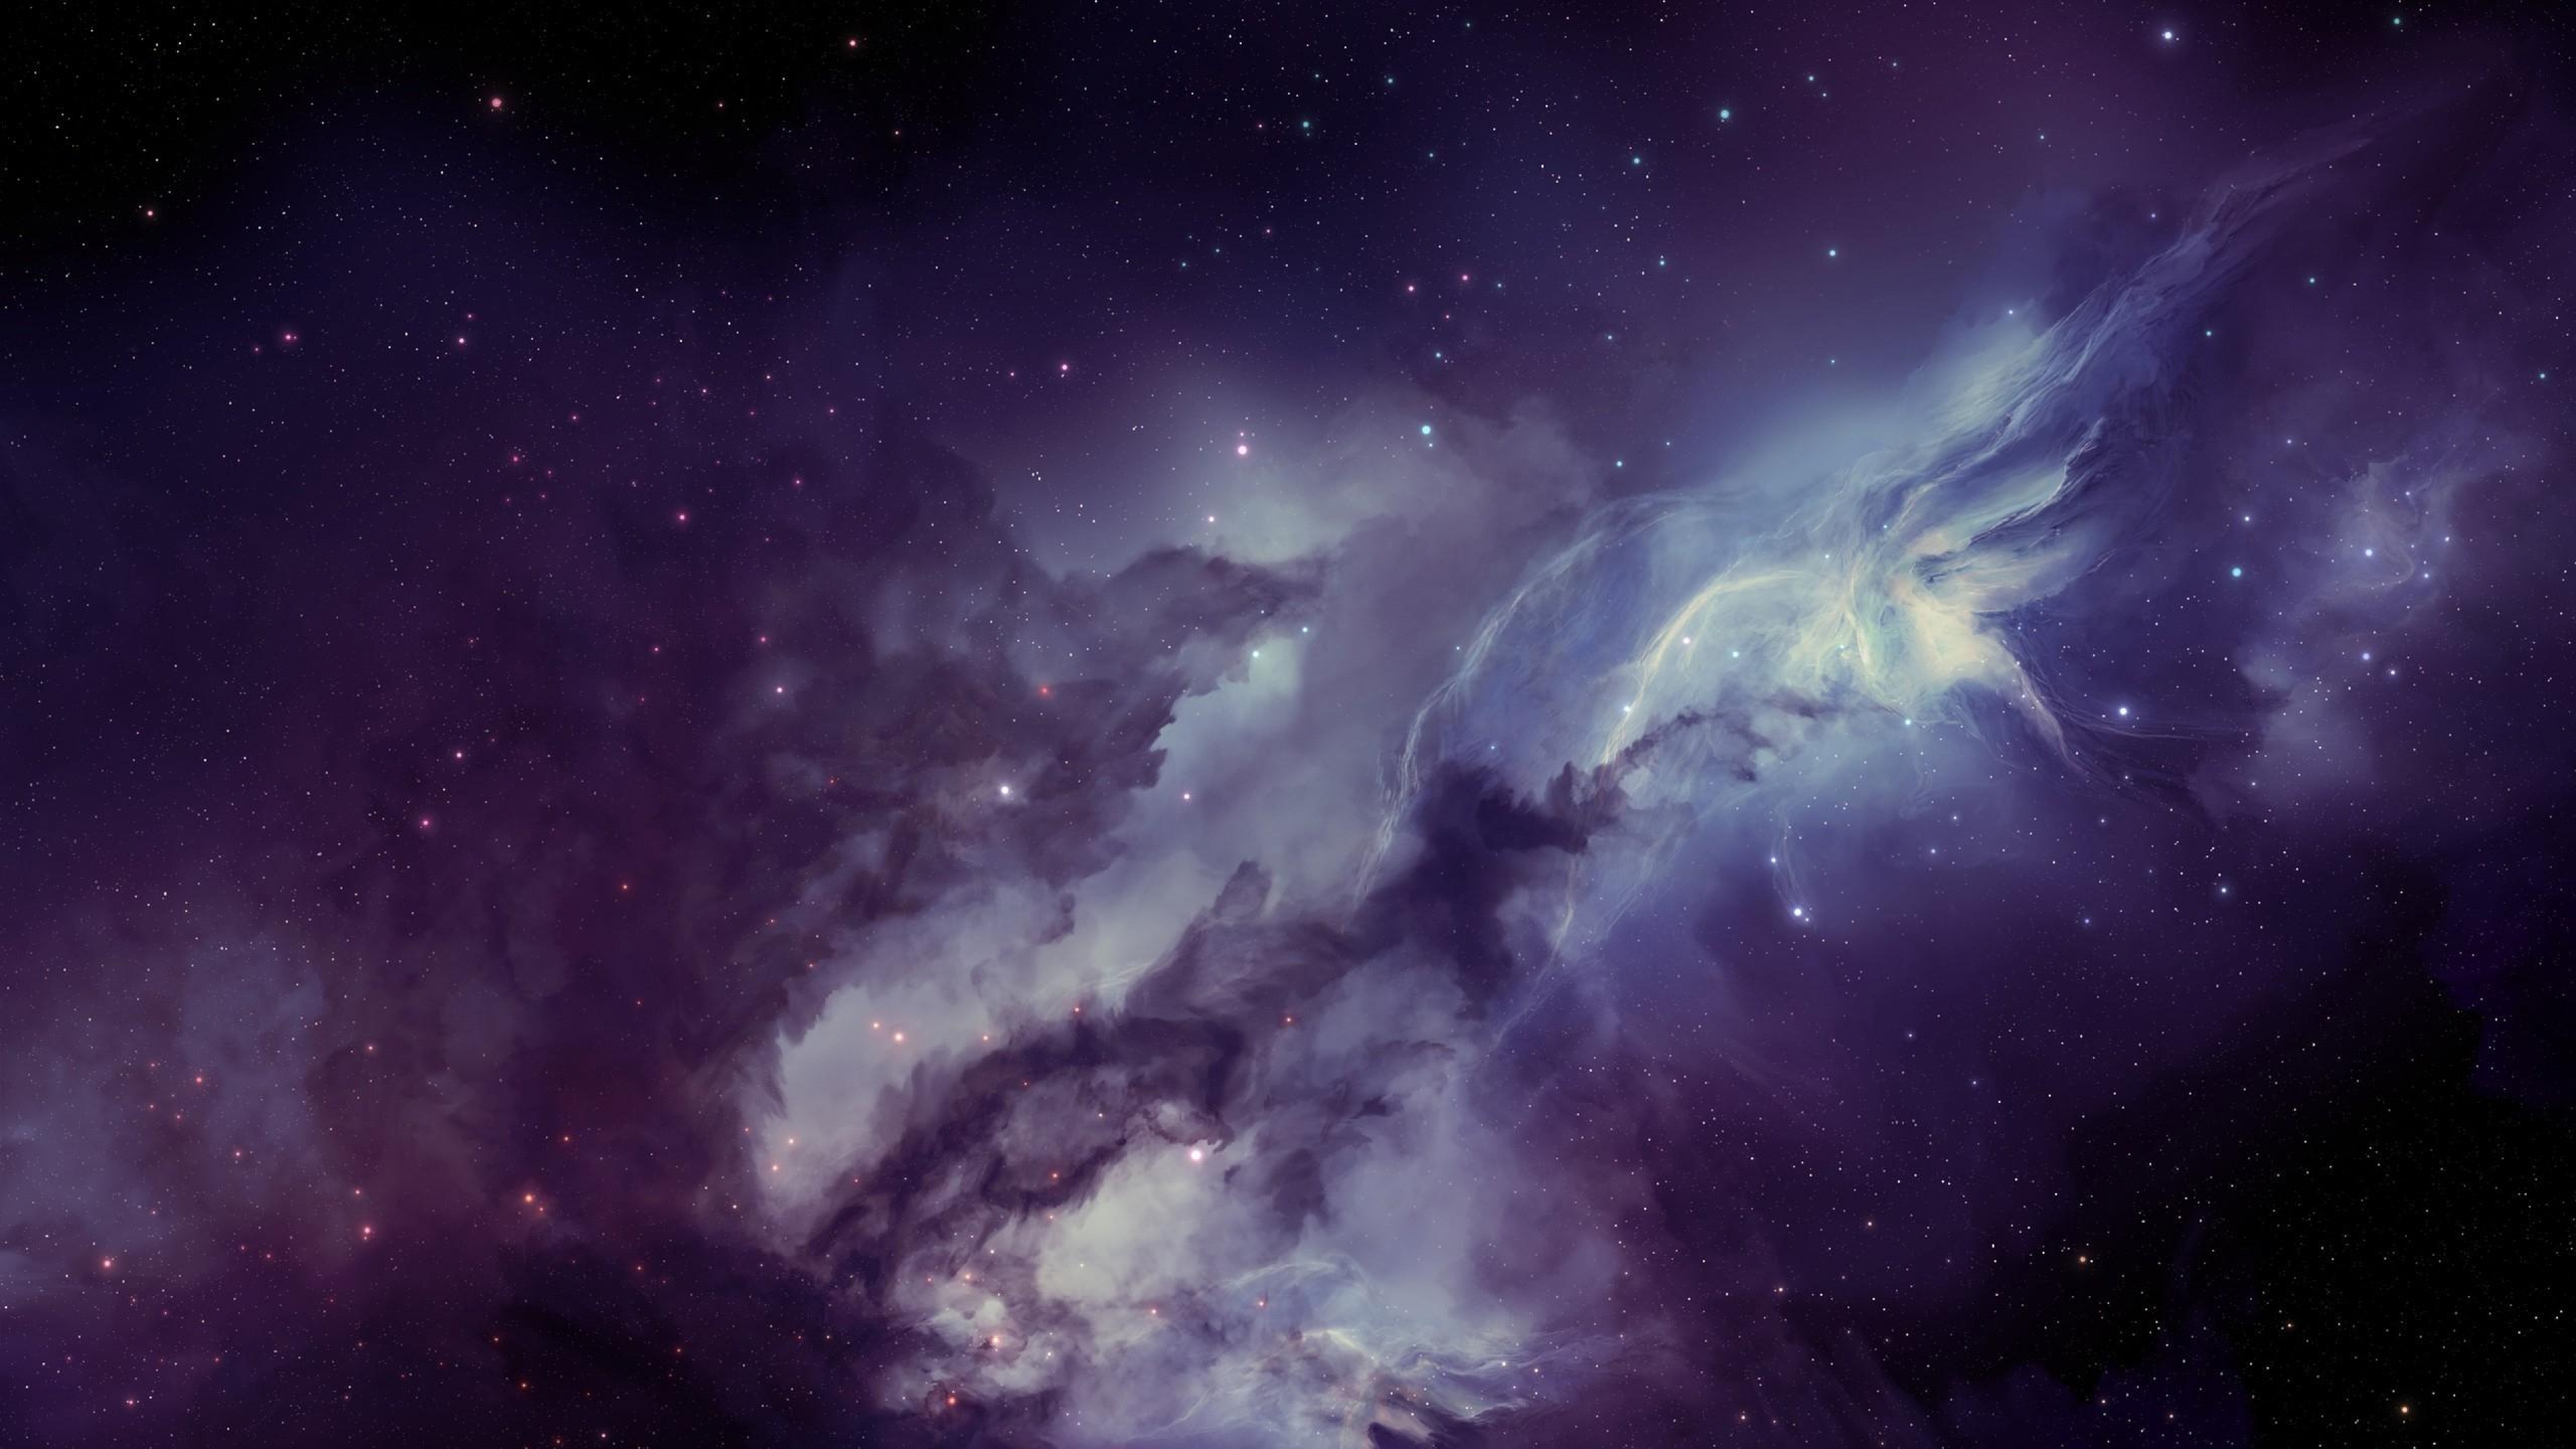 Download Wallpaper 3840x2160 galaxy nebula blurring stars 4K Ultra